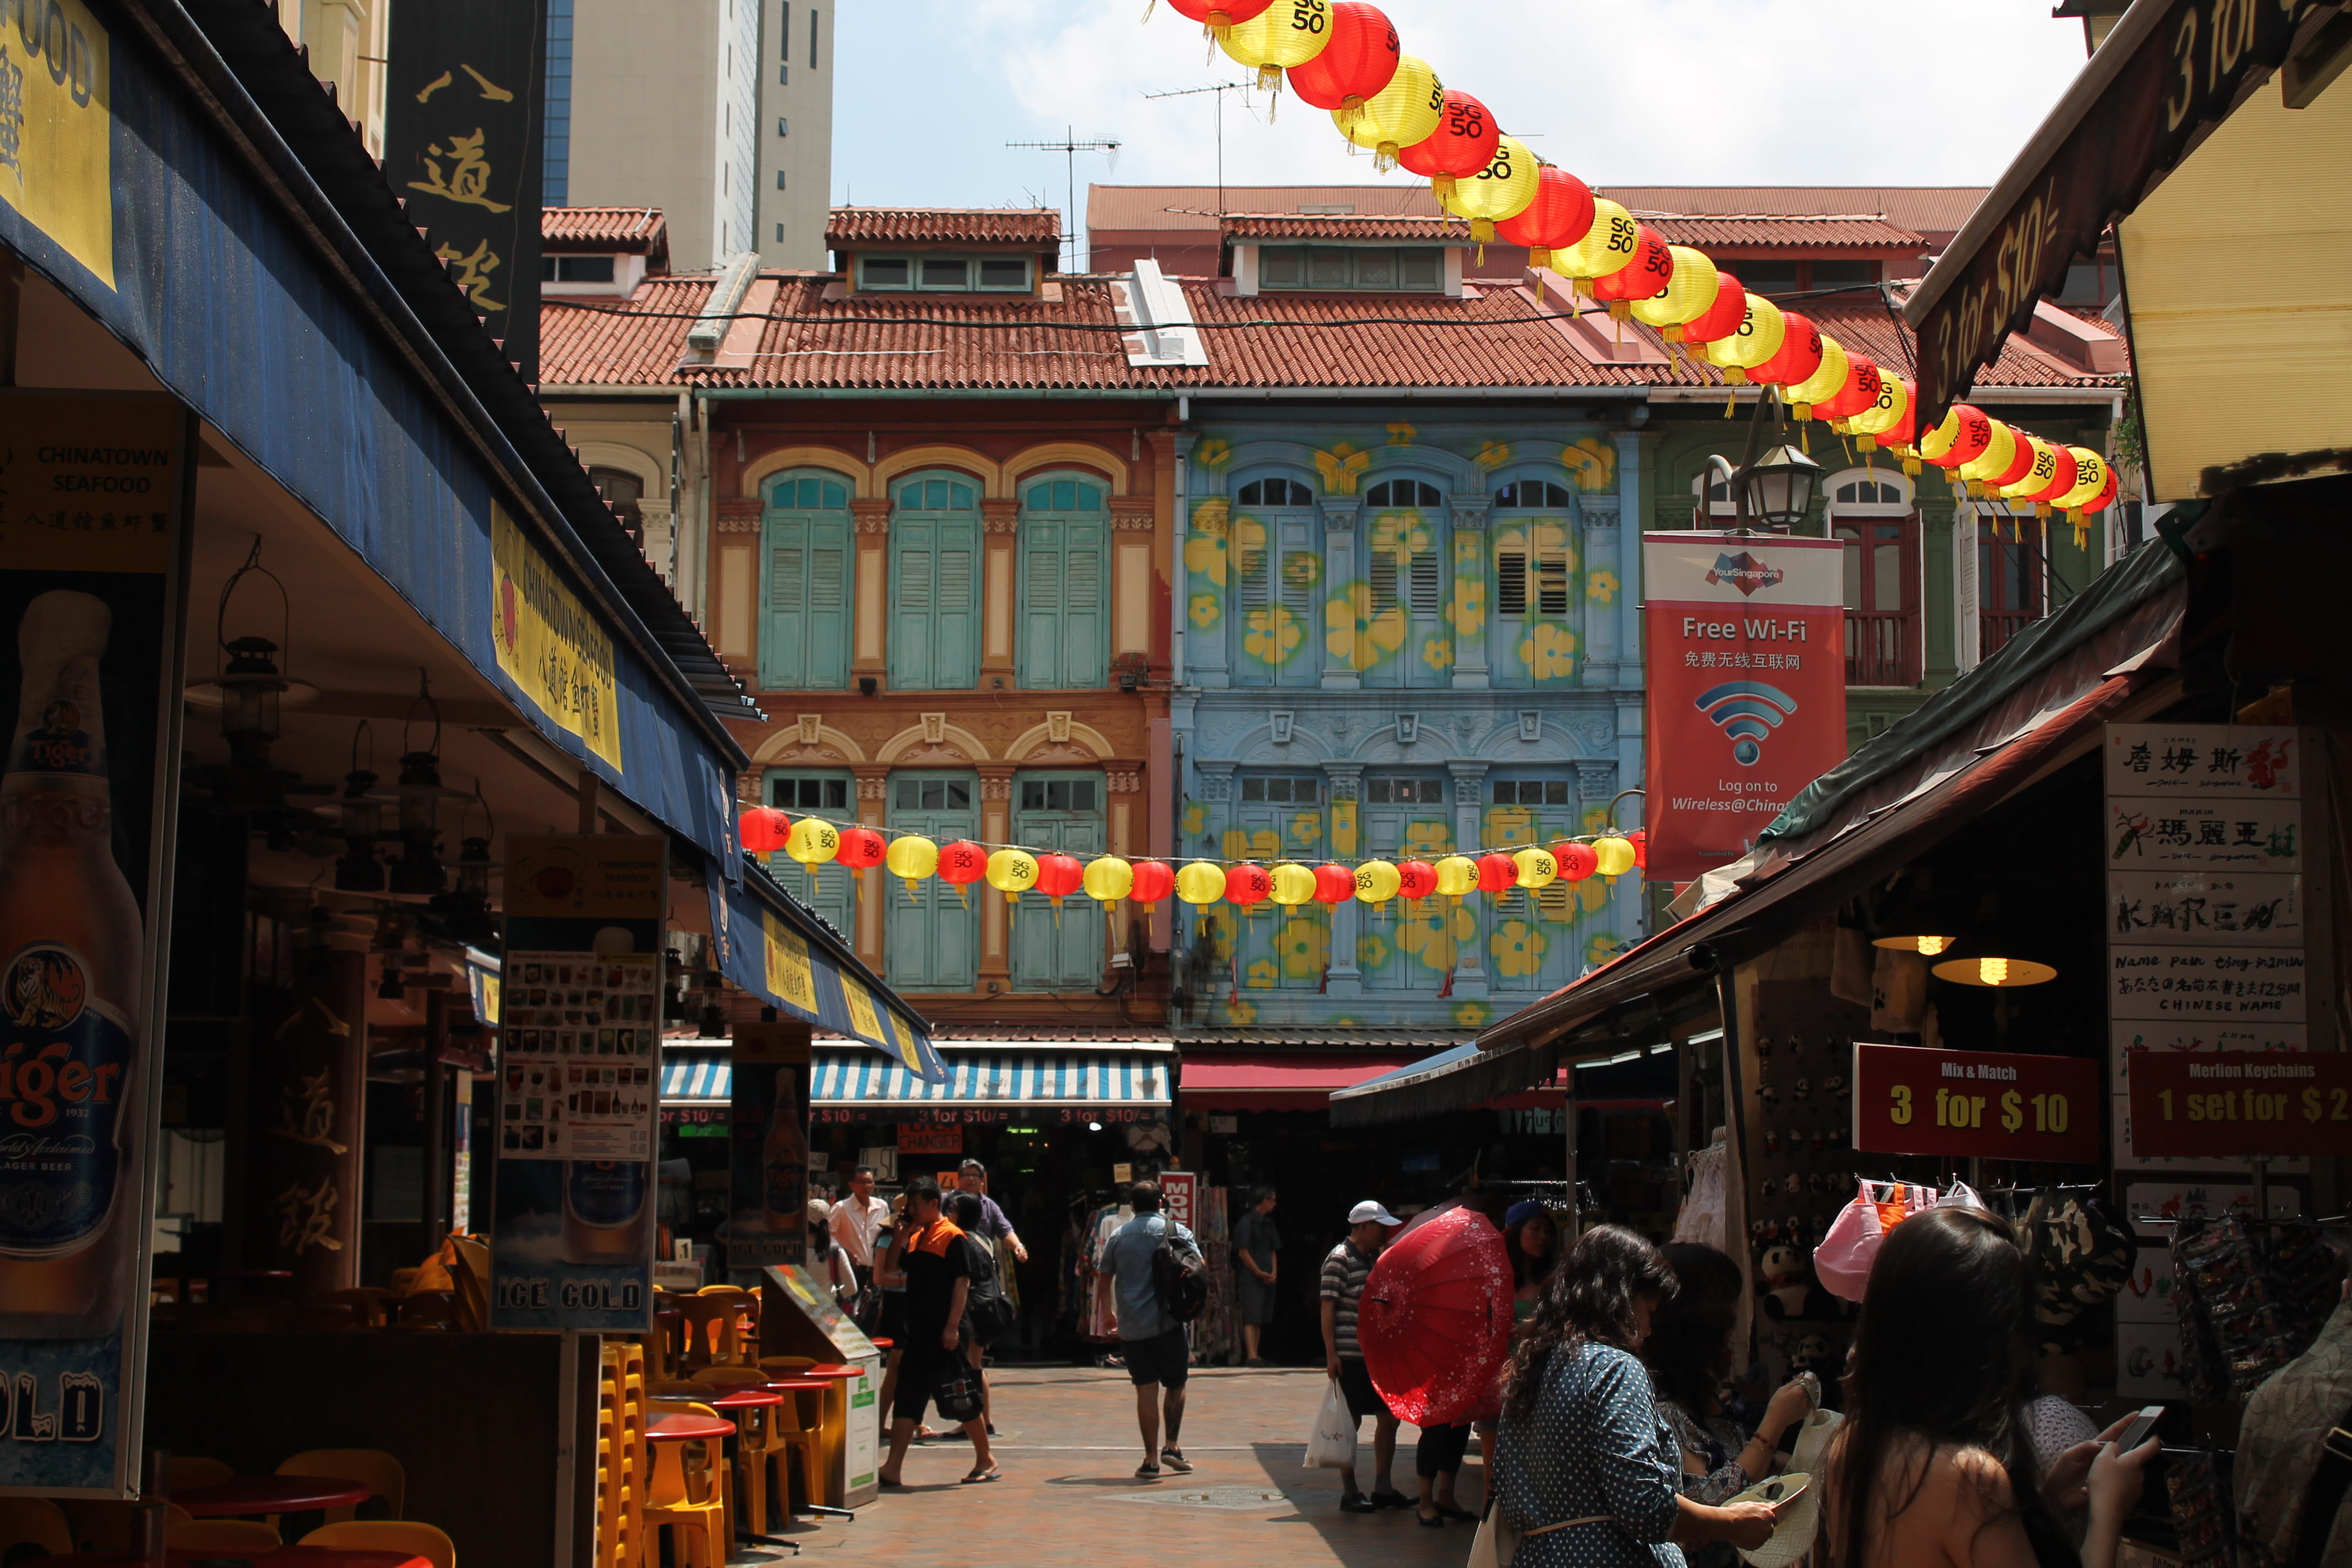 Street scene in Singapore's Chinatown